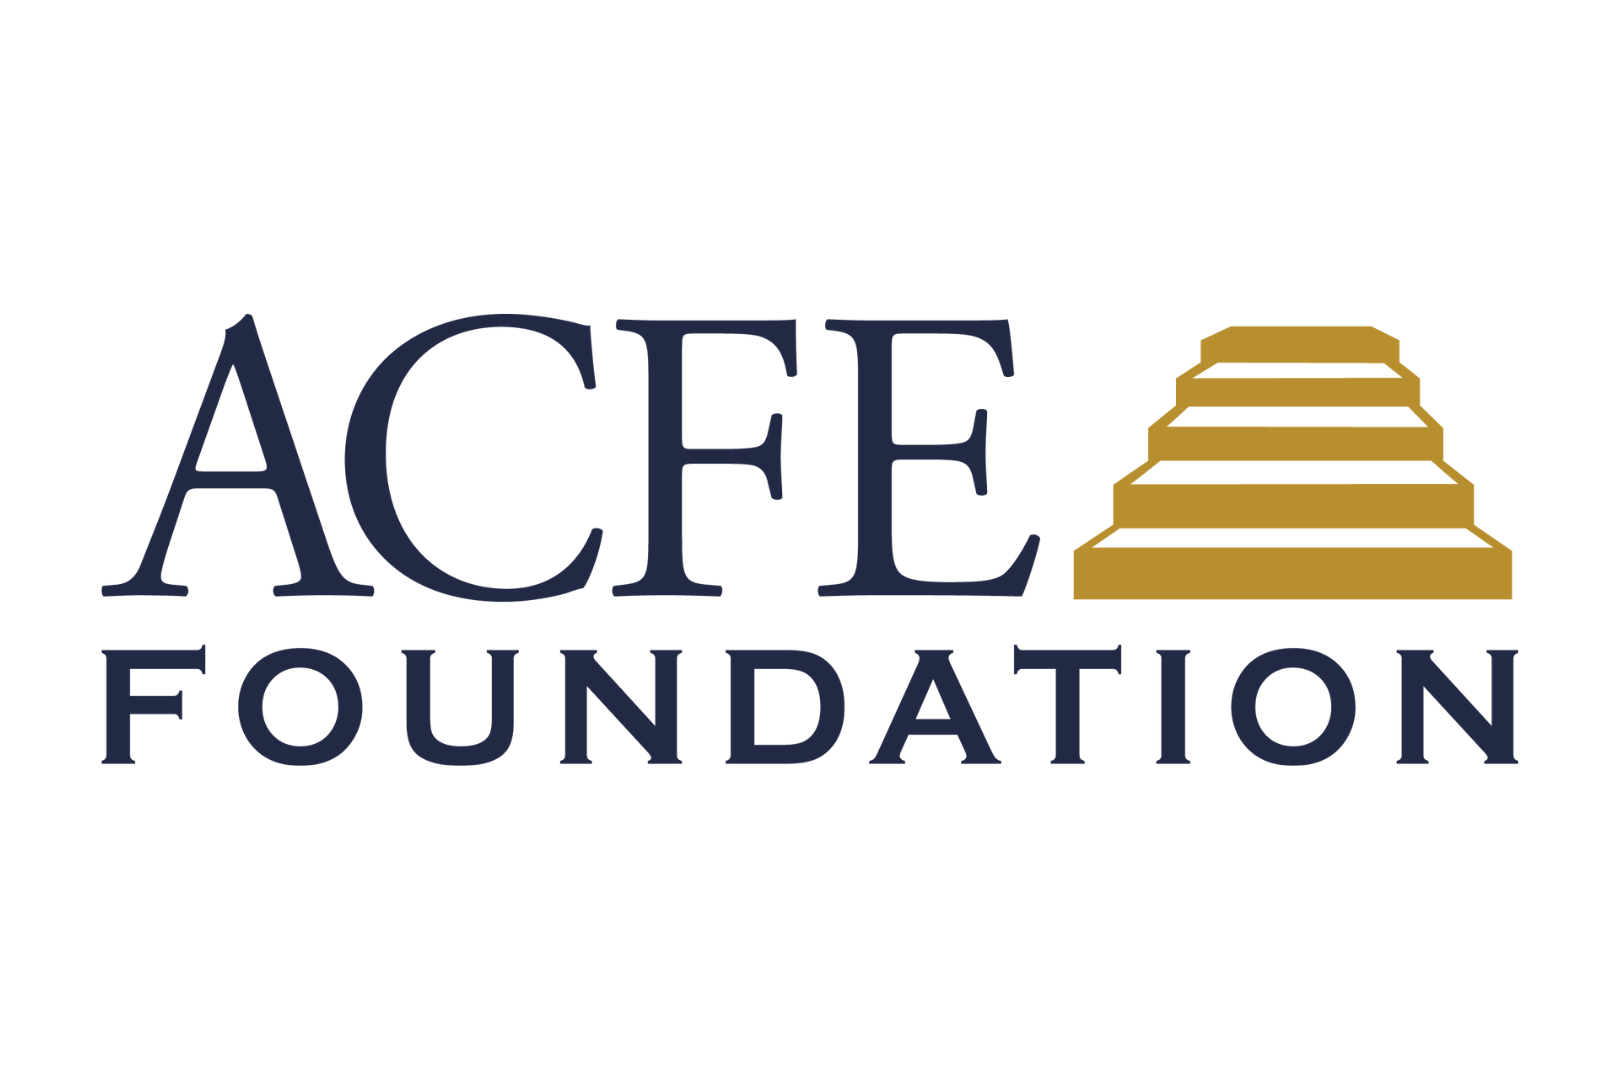 ACFE Foundation logo